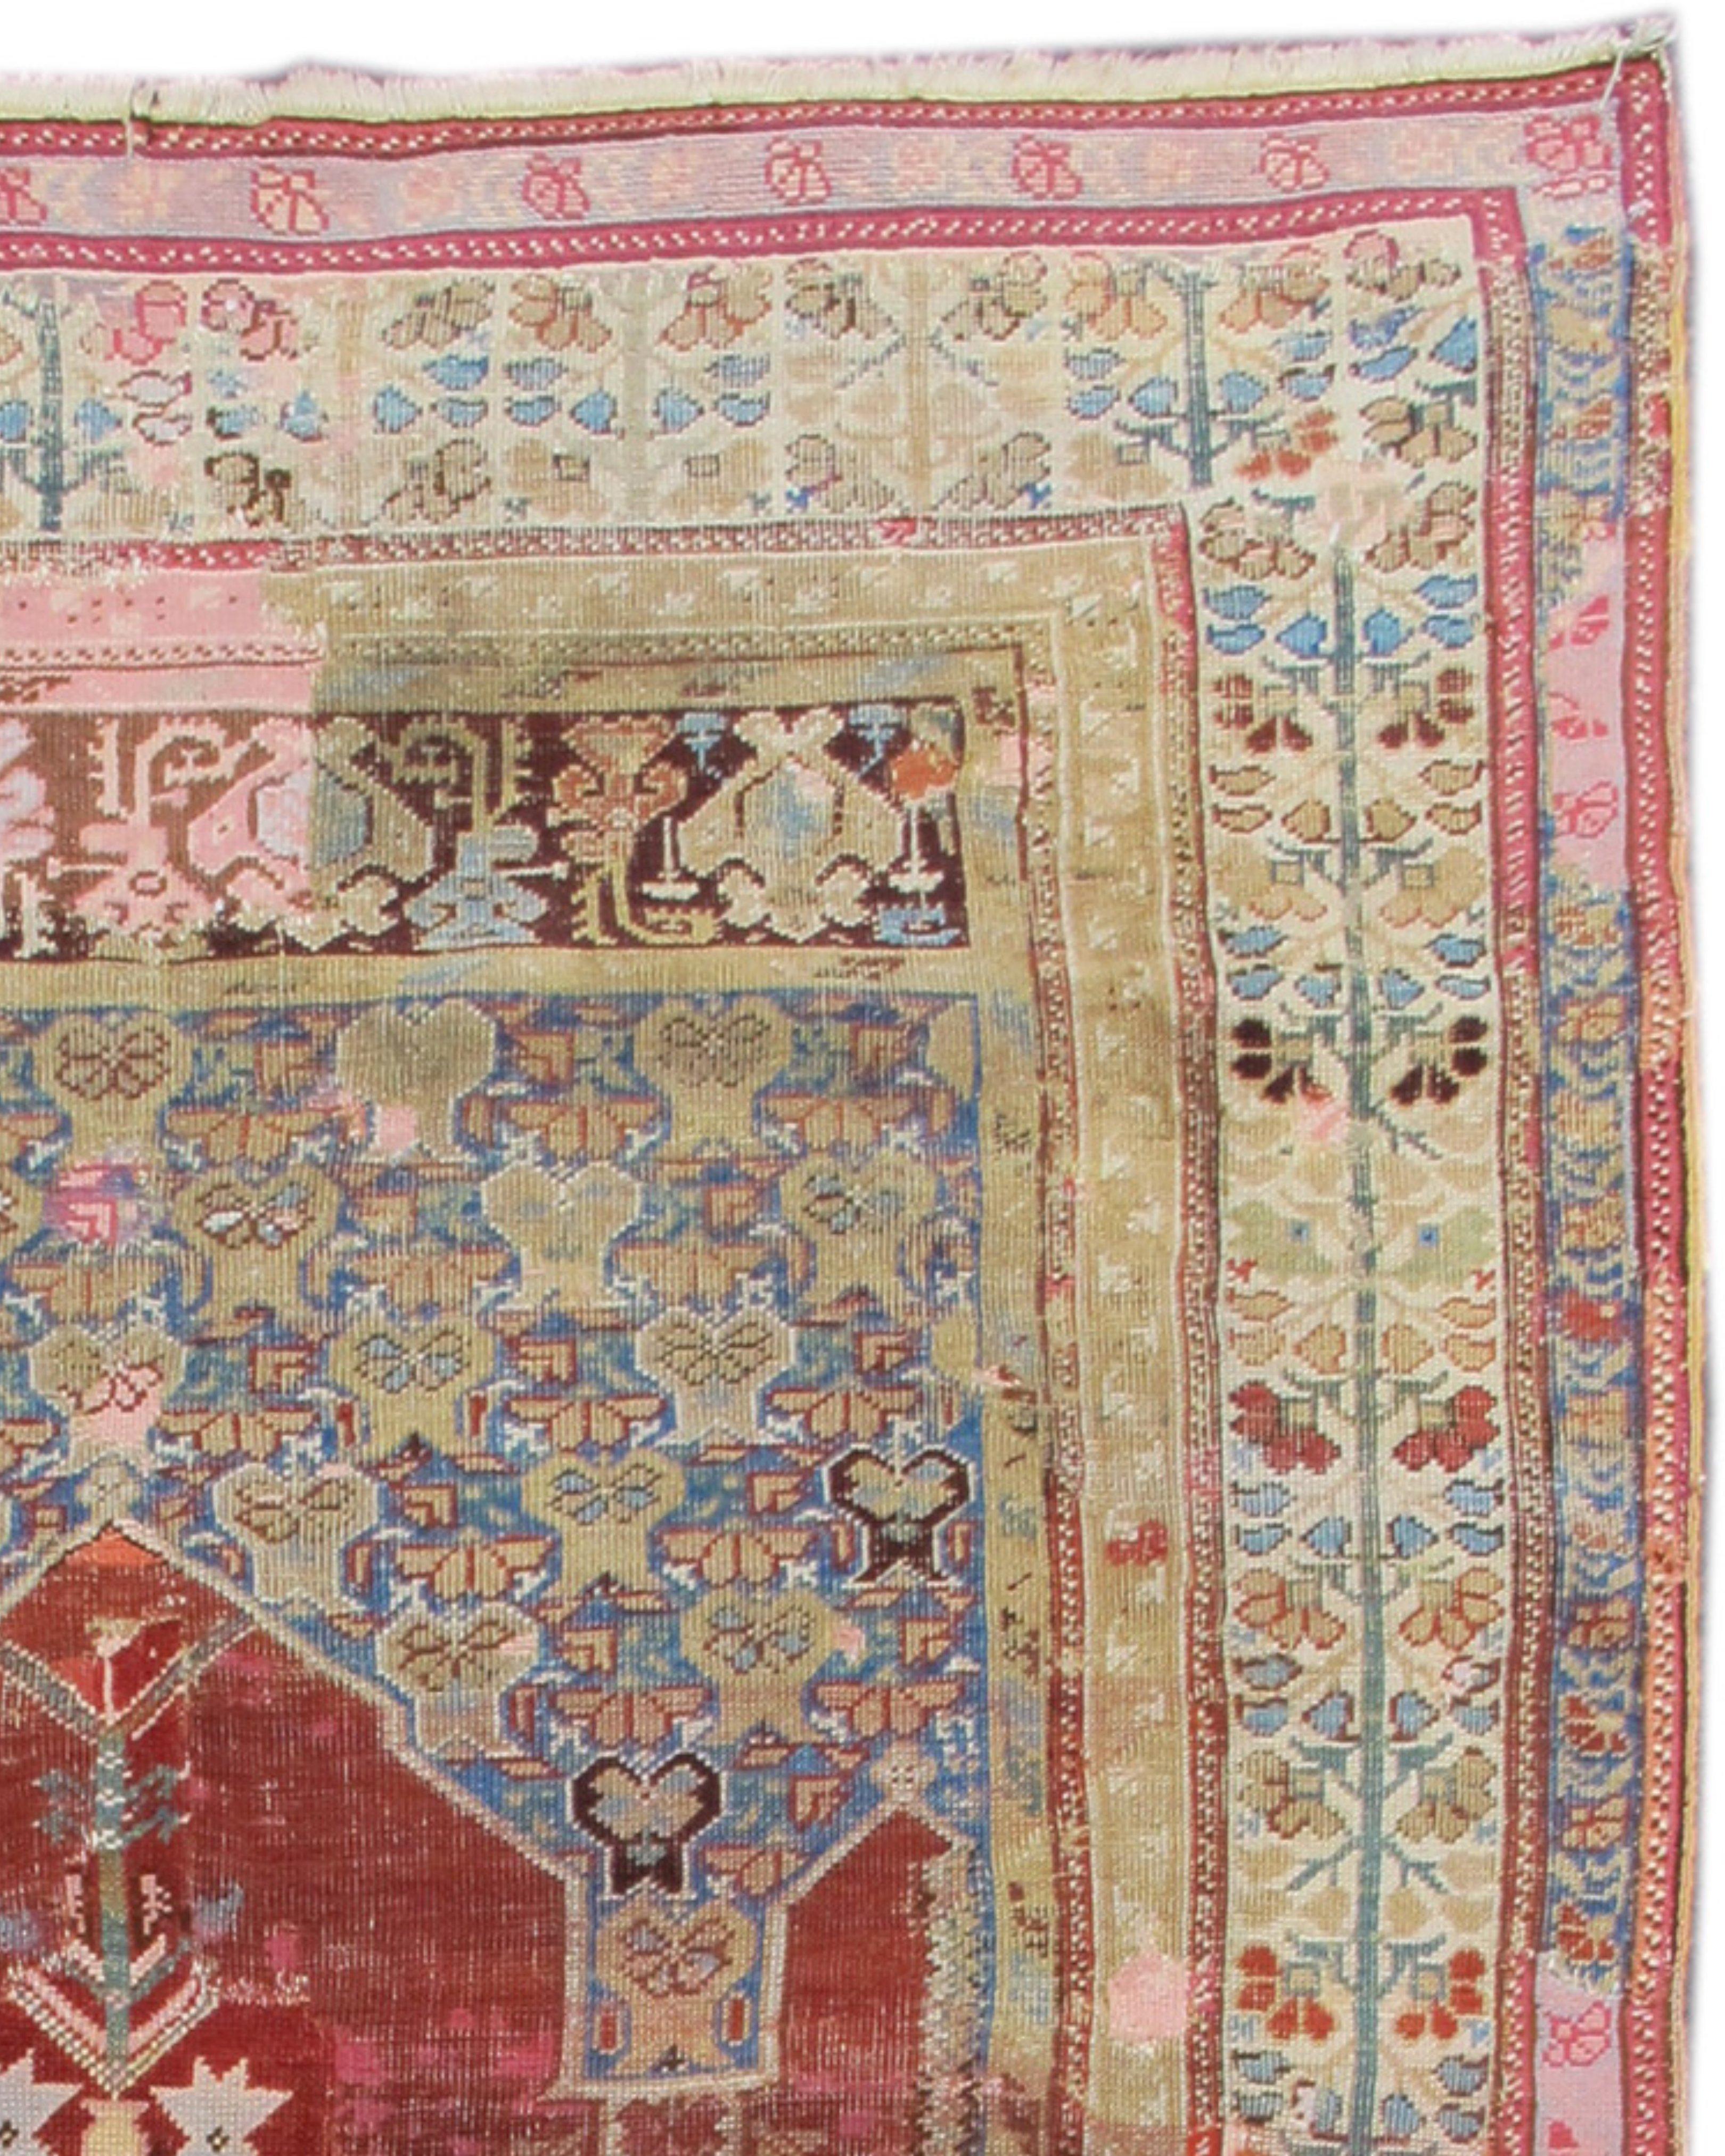 Antiker anatolischer Kula-Gebetsteppich, 18. Jahrhundert

Zusätzliche Informationen:
Abmessungen: 5'7